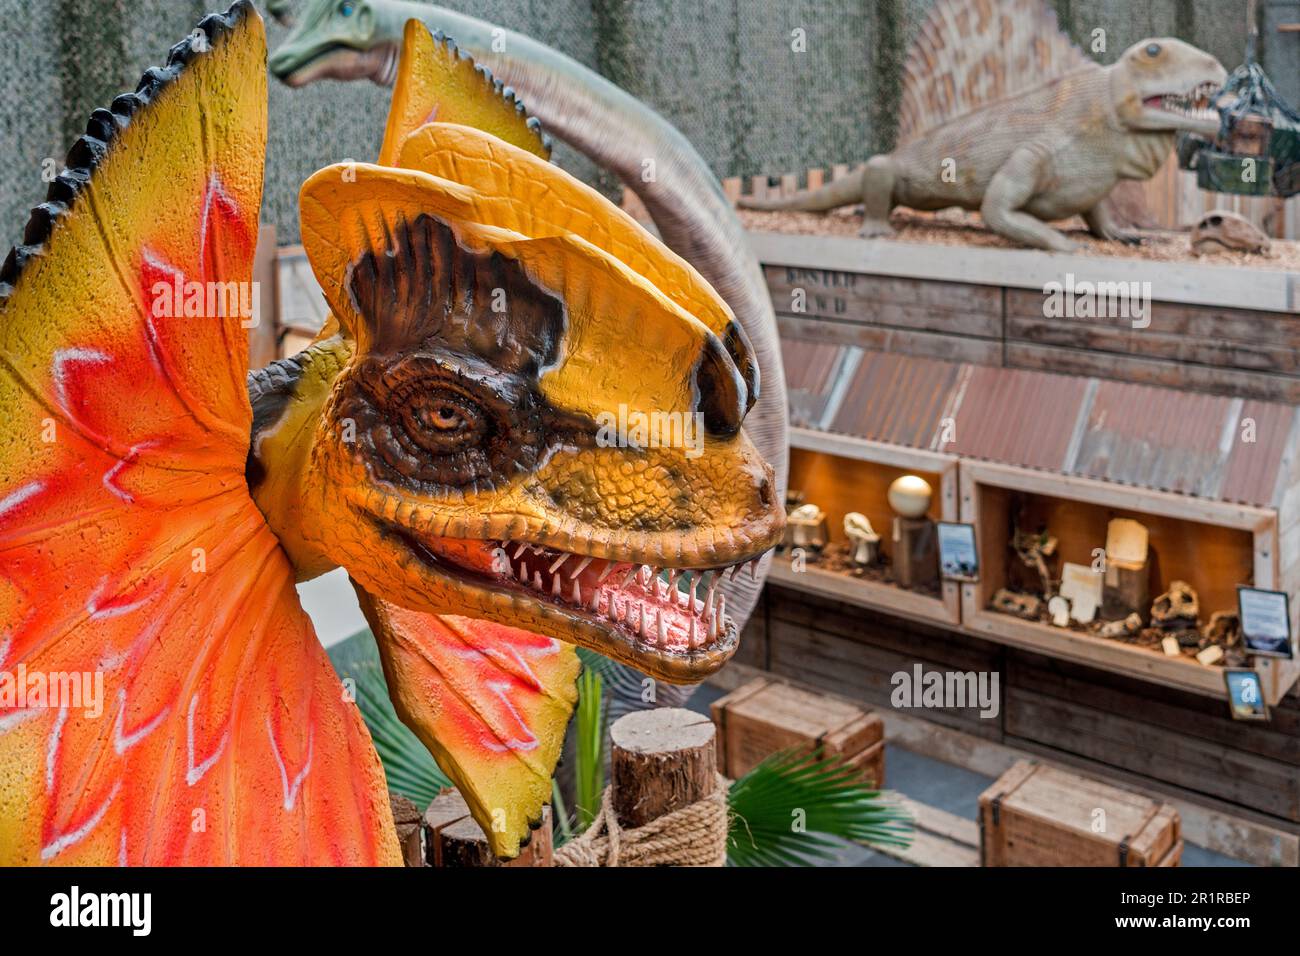 Des répliques de dinosaures géants exposées au zoo tropical de Berkenhof, parc d'attractions et d'animaux près de Kwadendamme, Zeeland, pays-Bas Banque D'Images